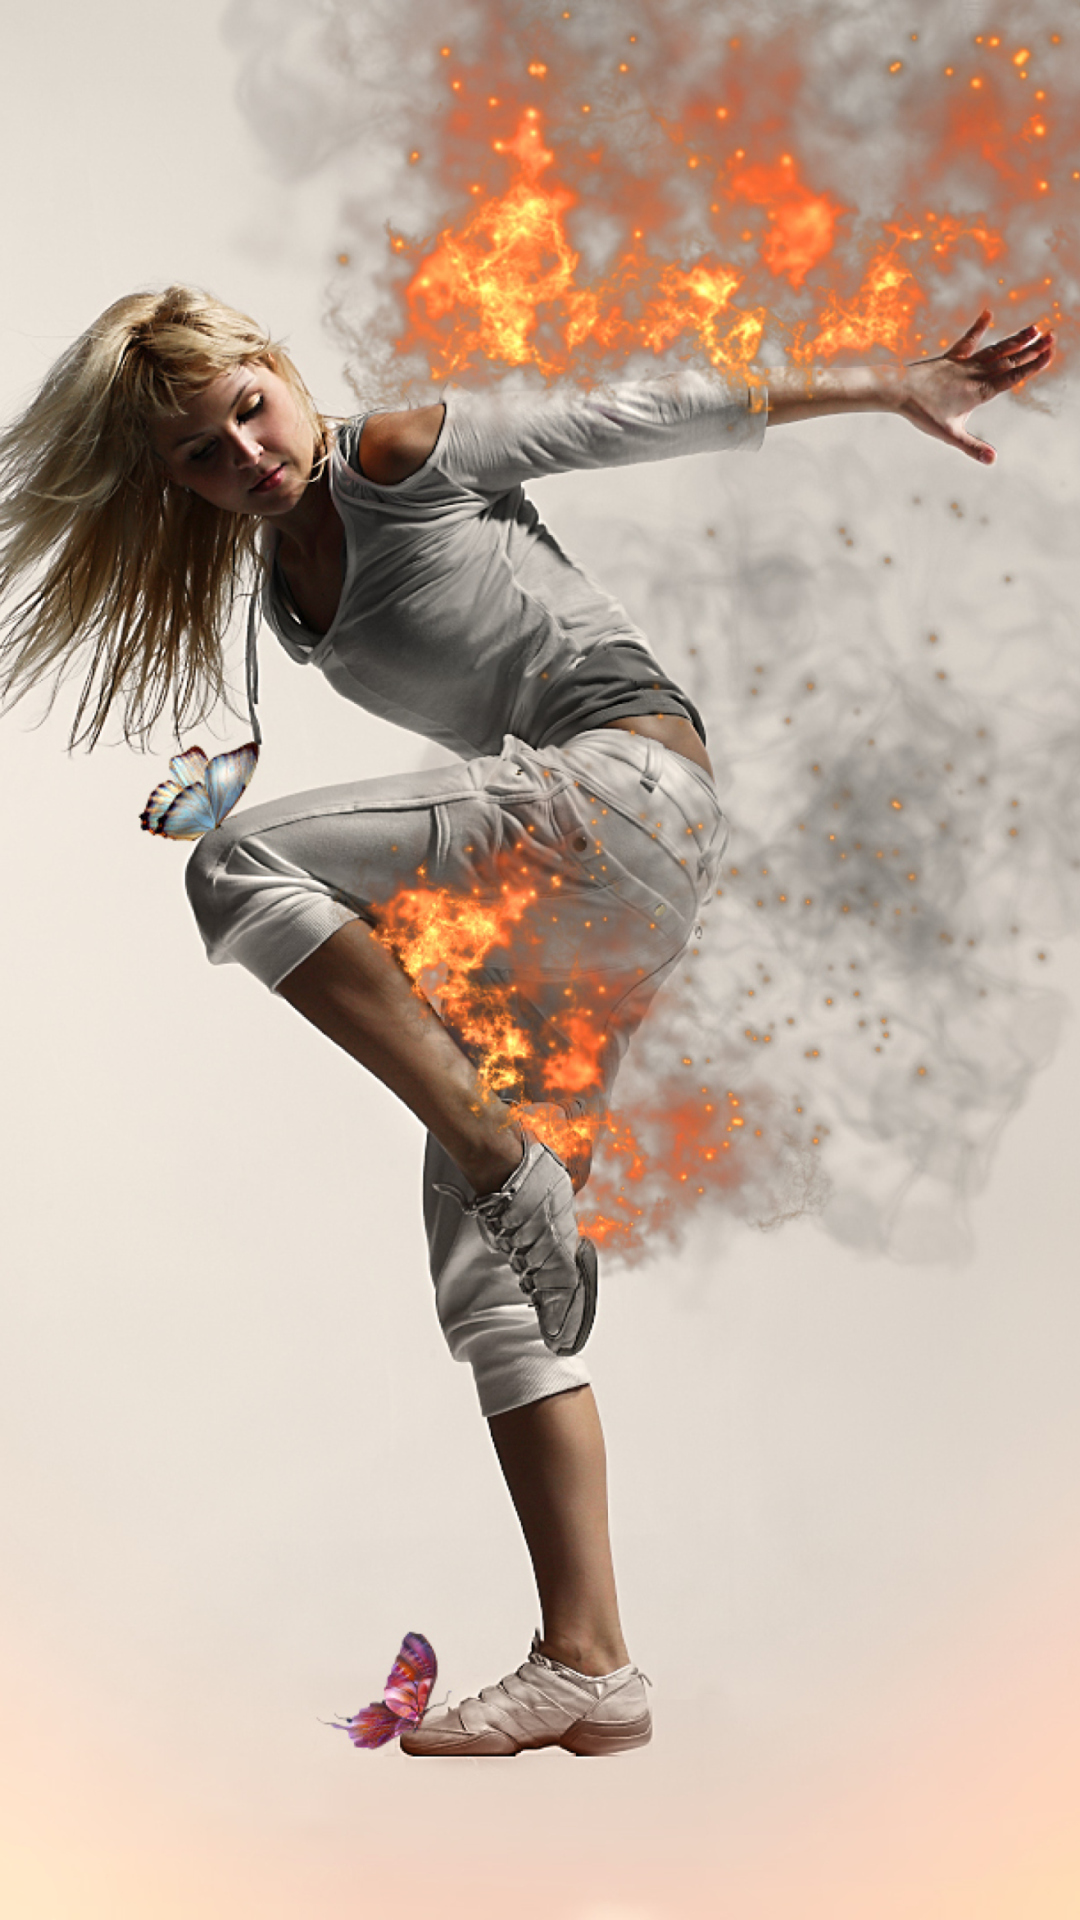 Fire Dance wallpaper 1080x1920